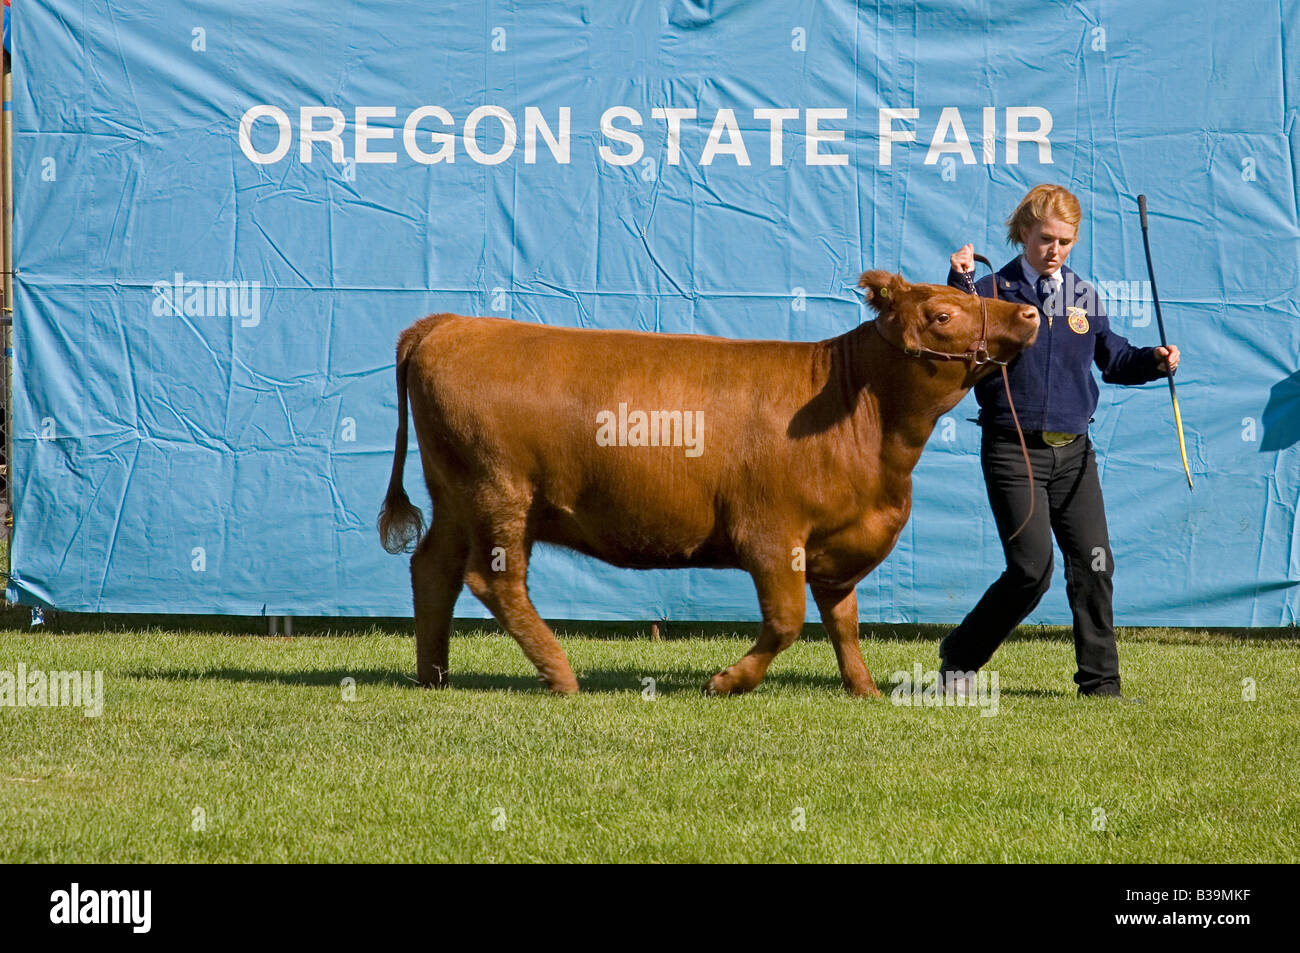 Un membre de la FFA les futurs agriculteurs d'Amérique walksbeef au concours bovins vache de la Oregon State Fair Banque D'Images